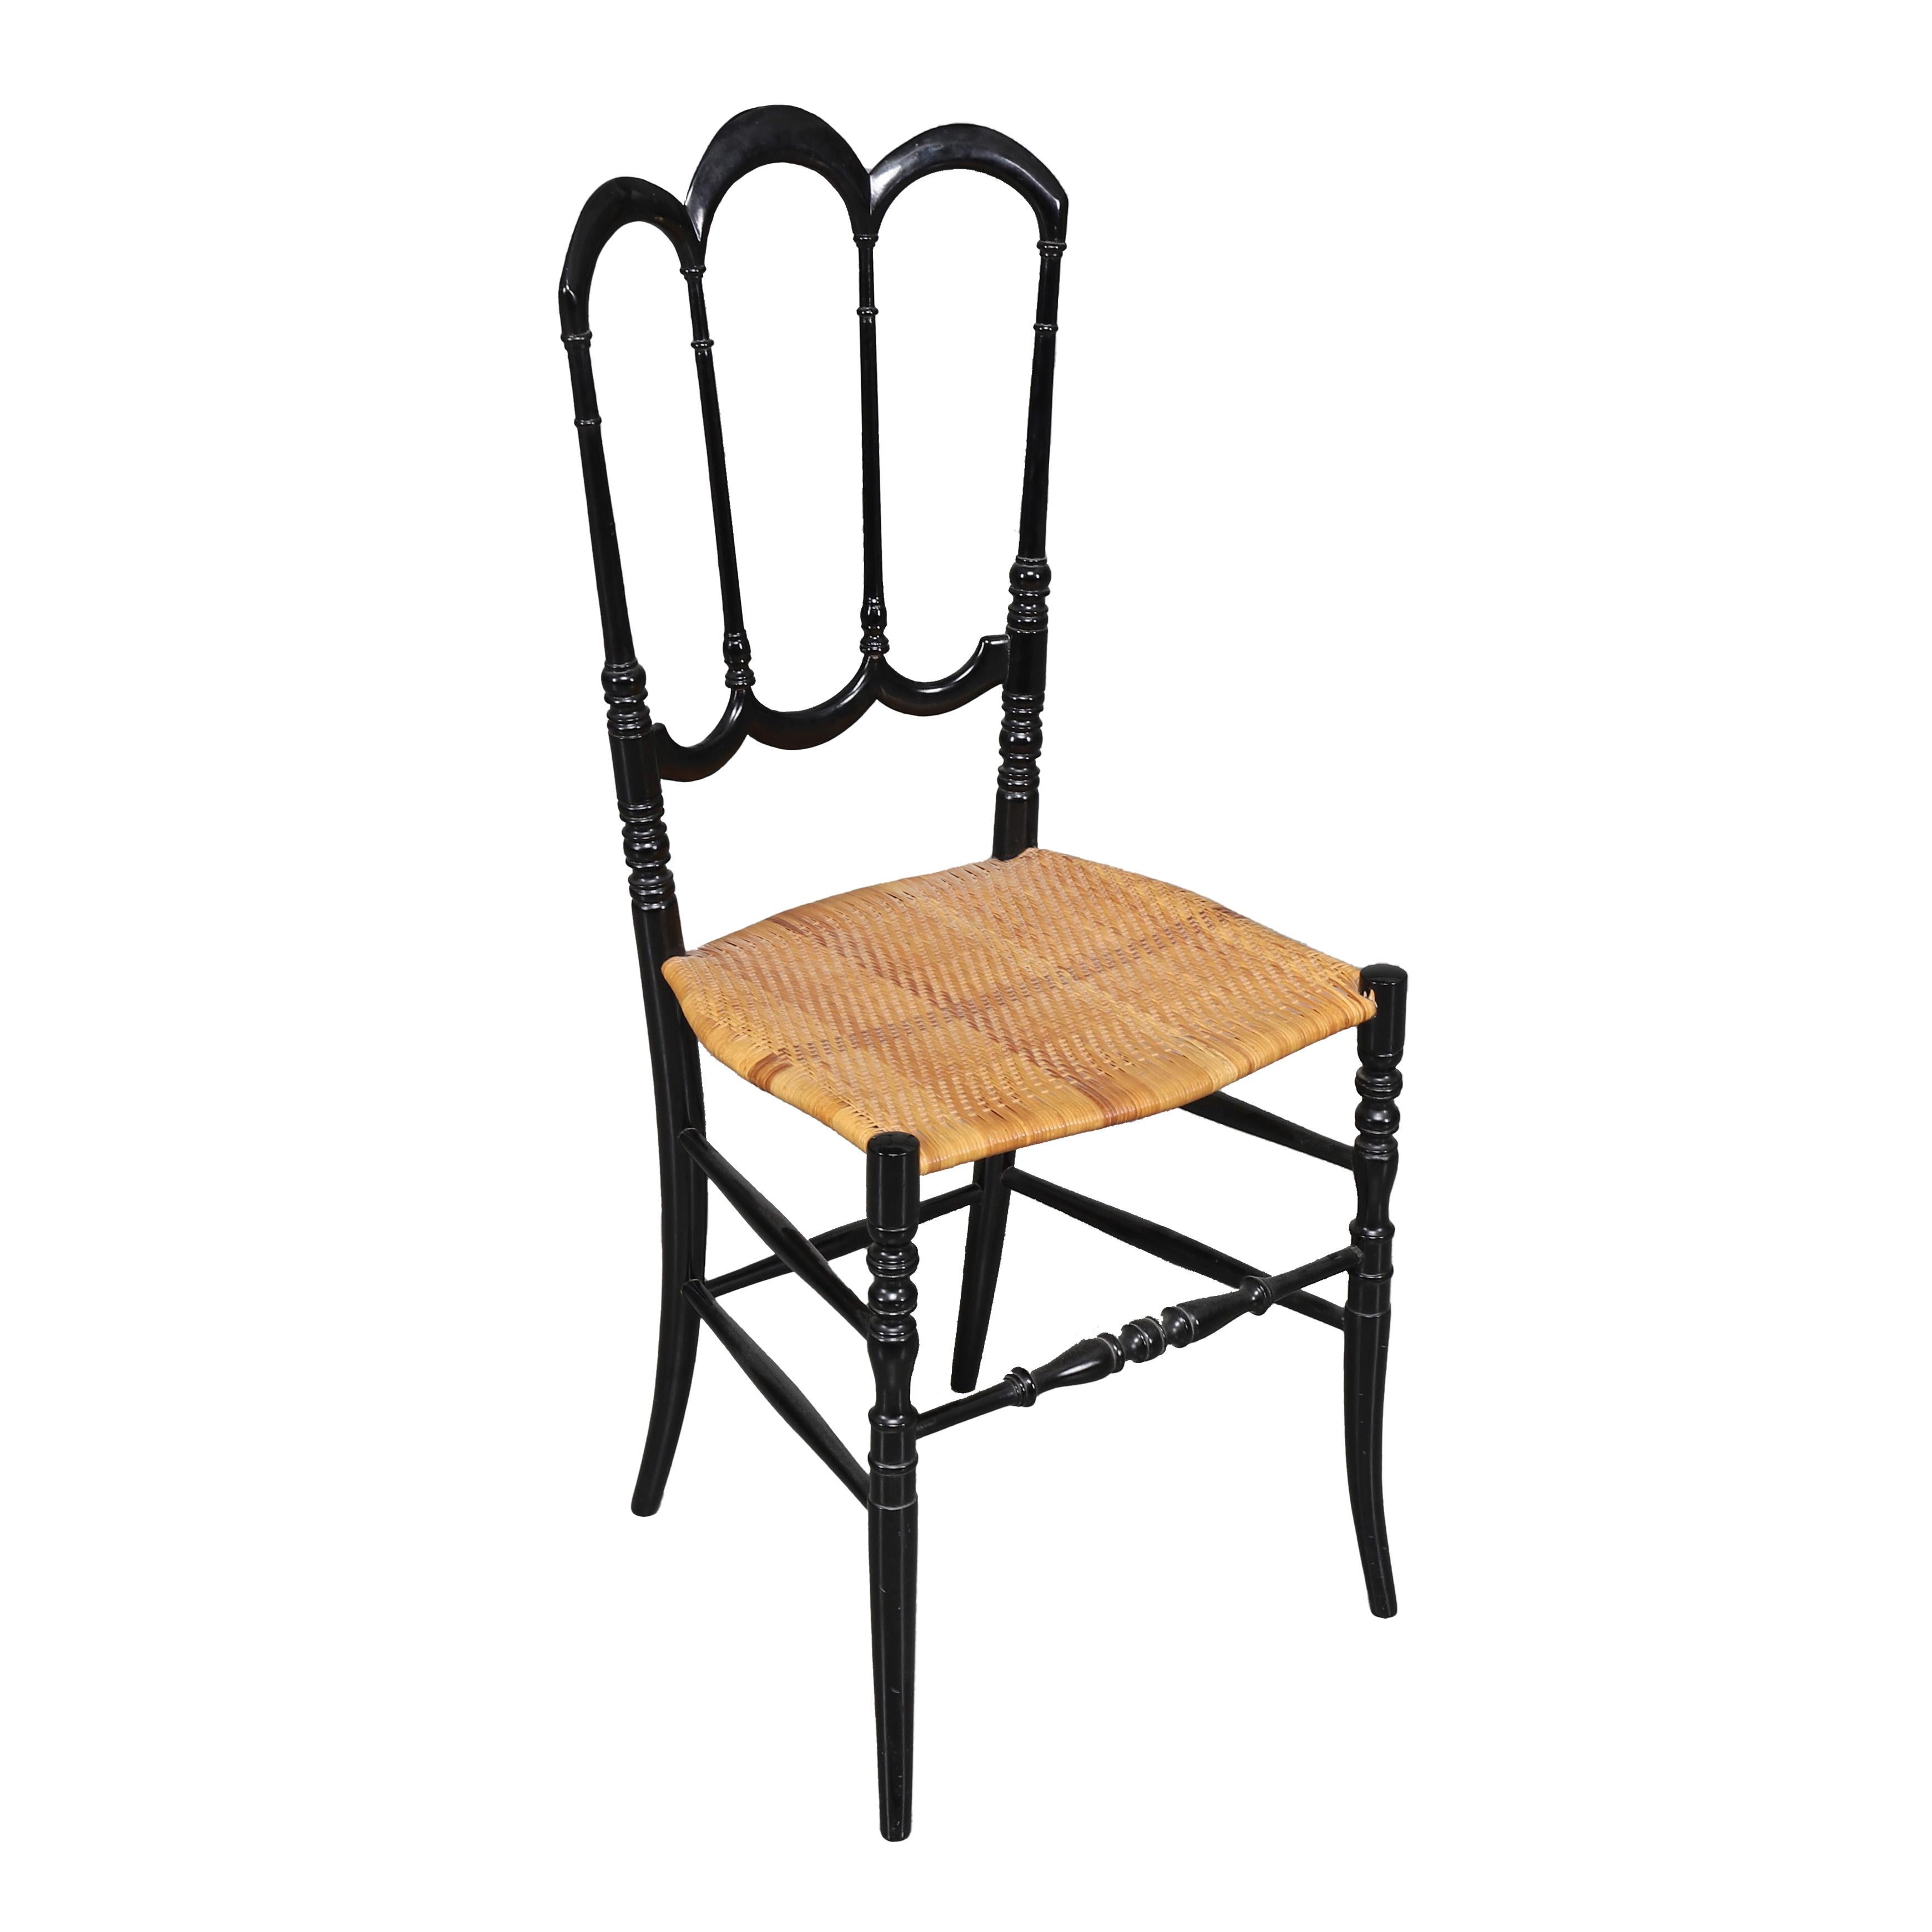 Nous vous proposons de considérer une chaise Chiavari solitaire, laquée noire, dans un bel état vintage. Avec ses pieds tournés, son cadre et son dossier en saule pourpre sculptés à la main dans un style Empire sobre du XVIIe siècle, il est peint en